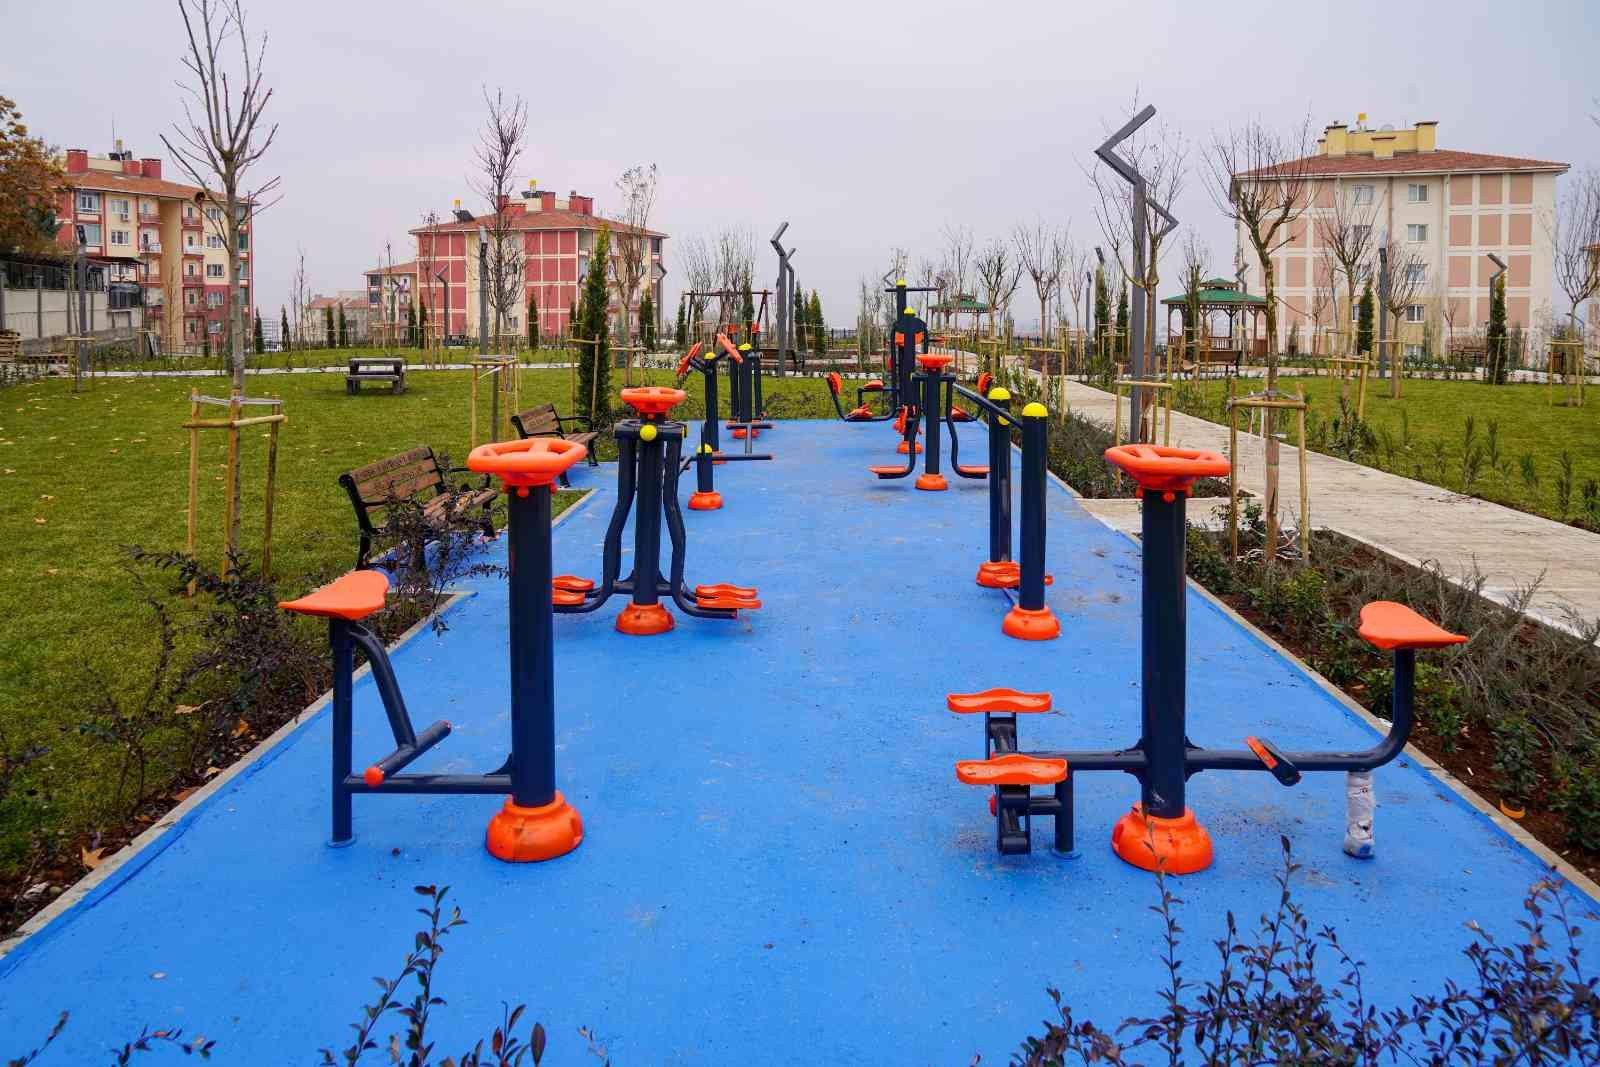 Kayapınar 500 Evler Parkı tamamlandı #diyarbakir